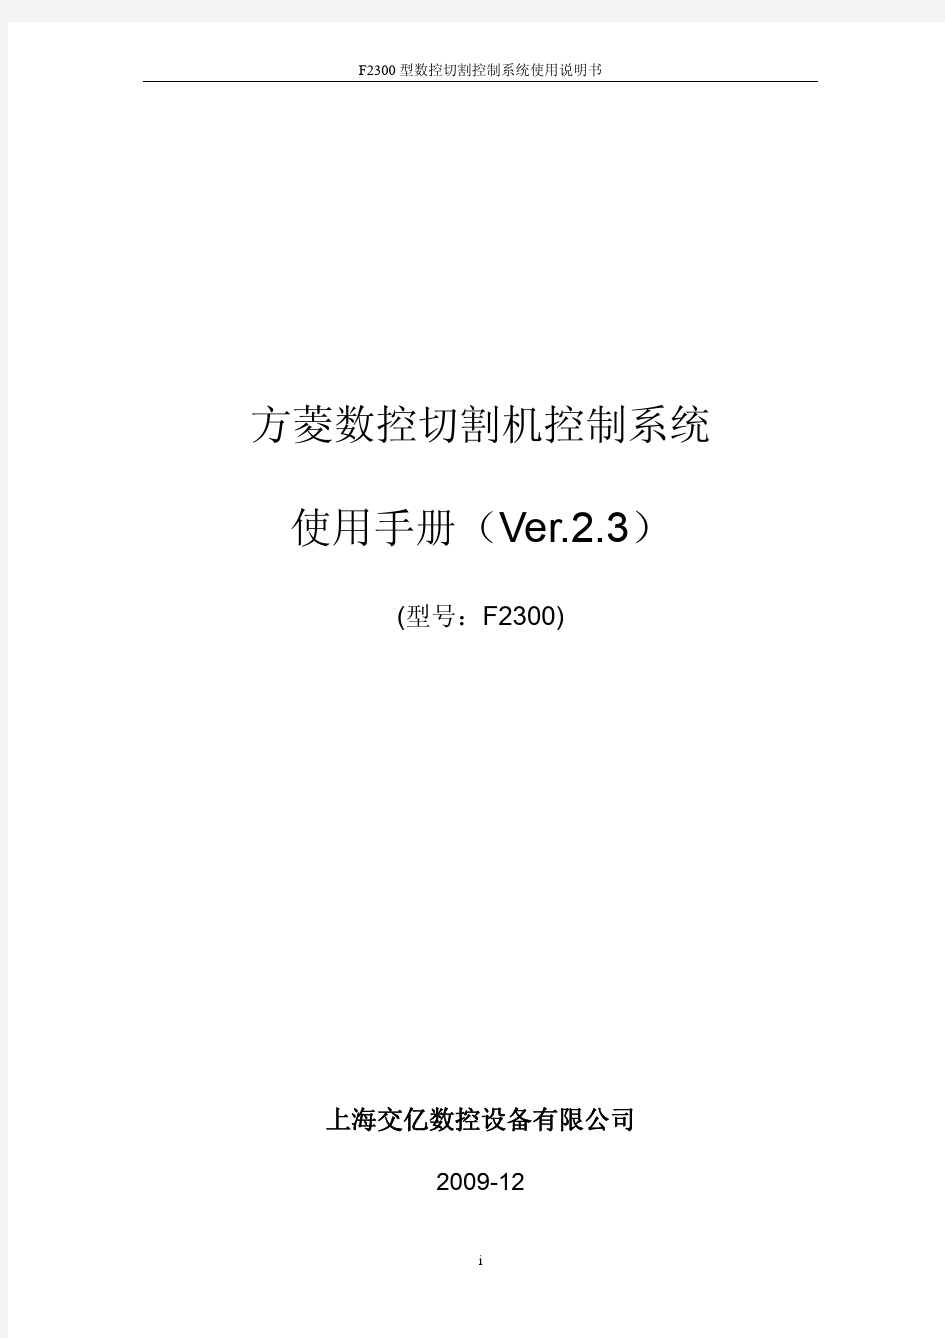 交大方菱数控平面切割控制系统F2300_Ver2.3_操作手册